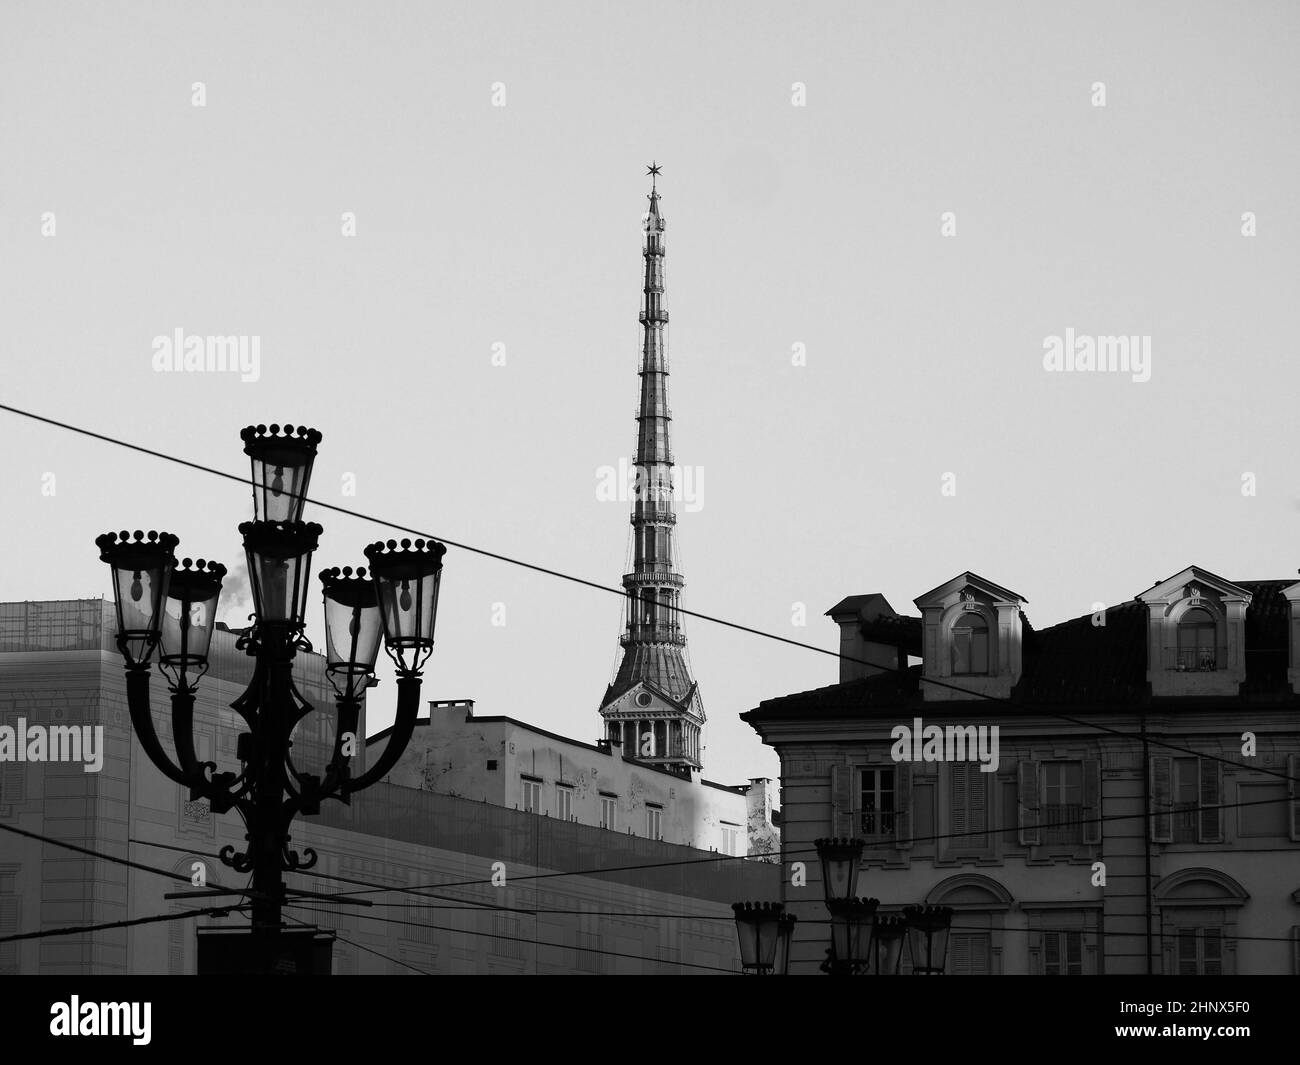 El campanario Mole Antonelliana en Turín, Italia en blanco y negro Foto de stock